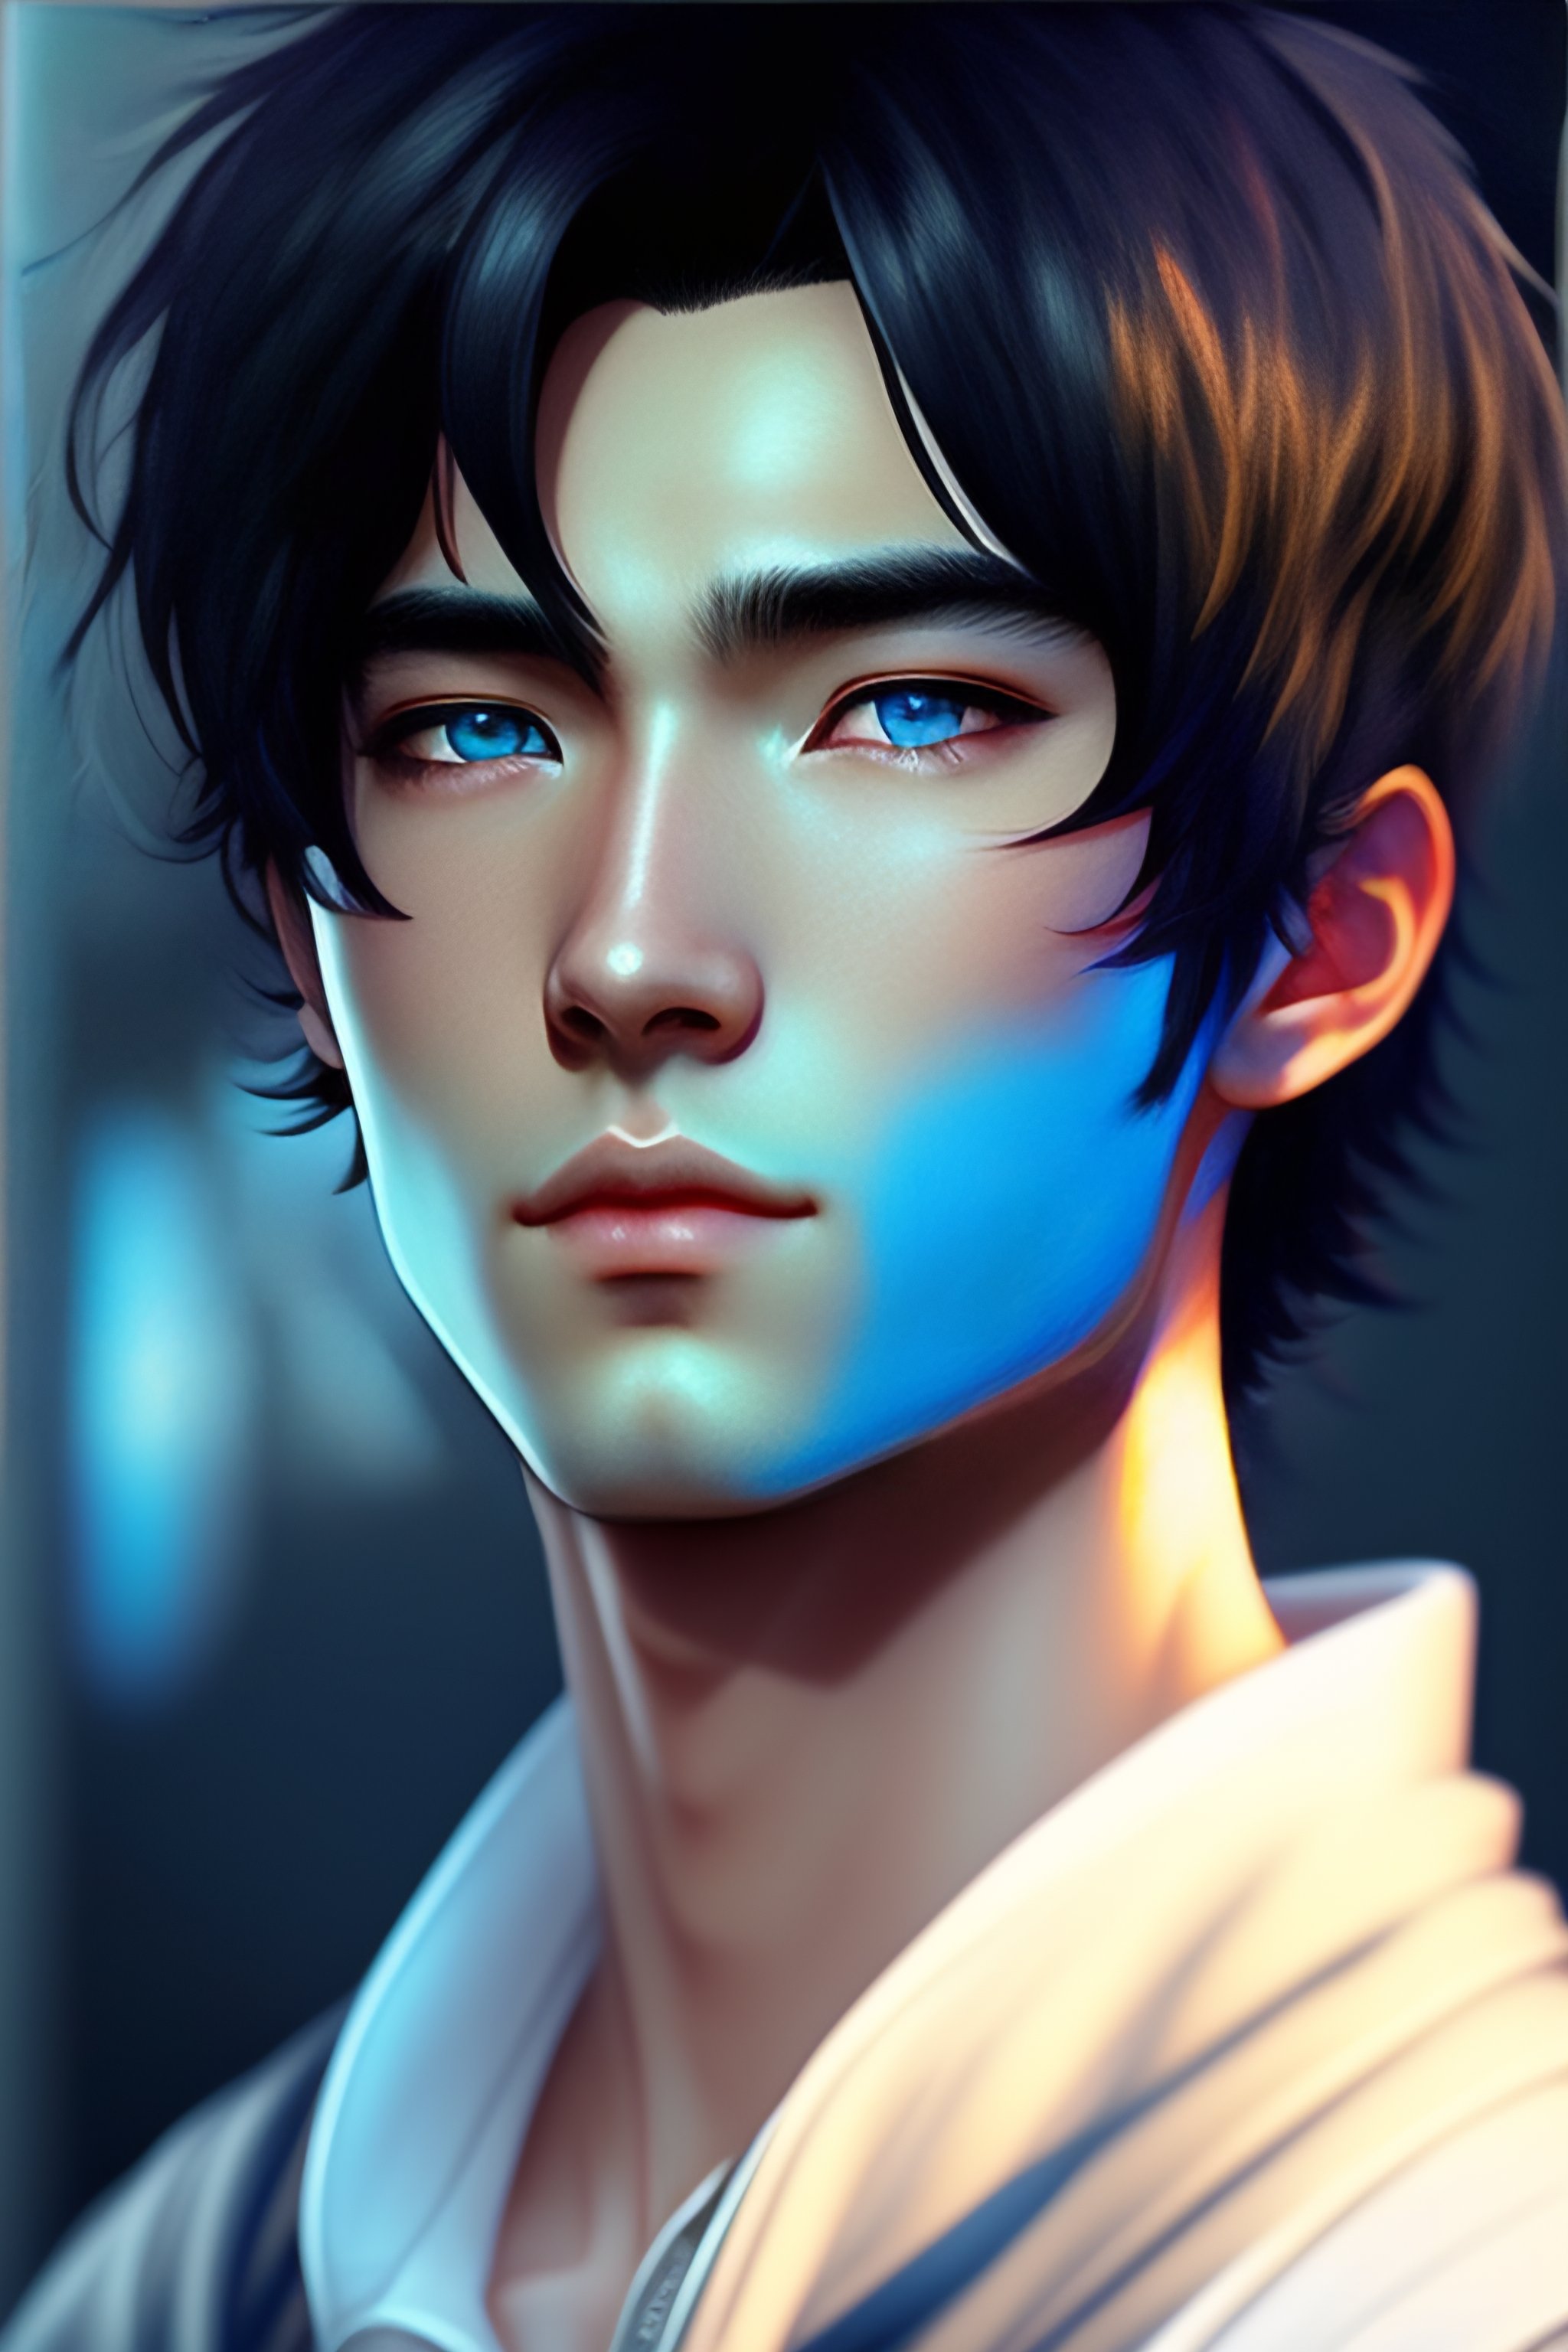 Lexica - Anime boy, black hair, blue eyes, photorealistic, highly